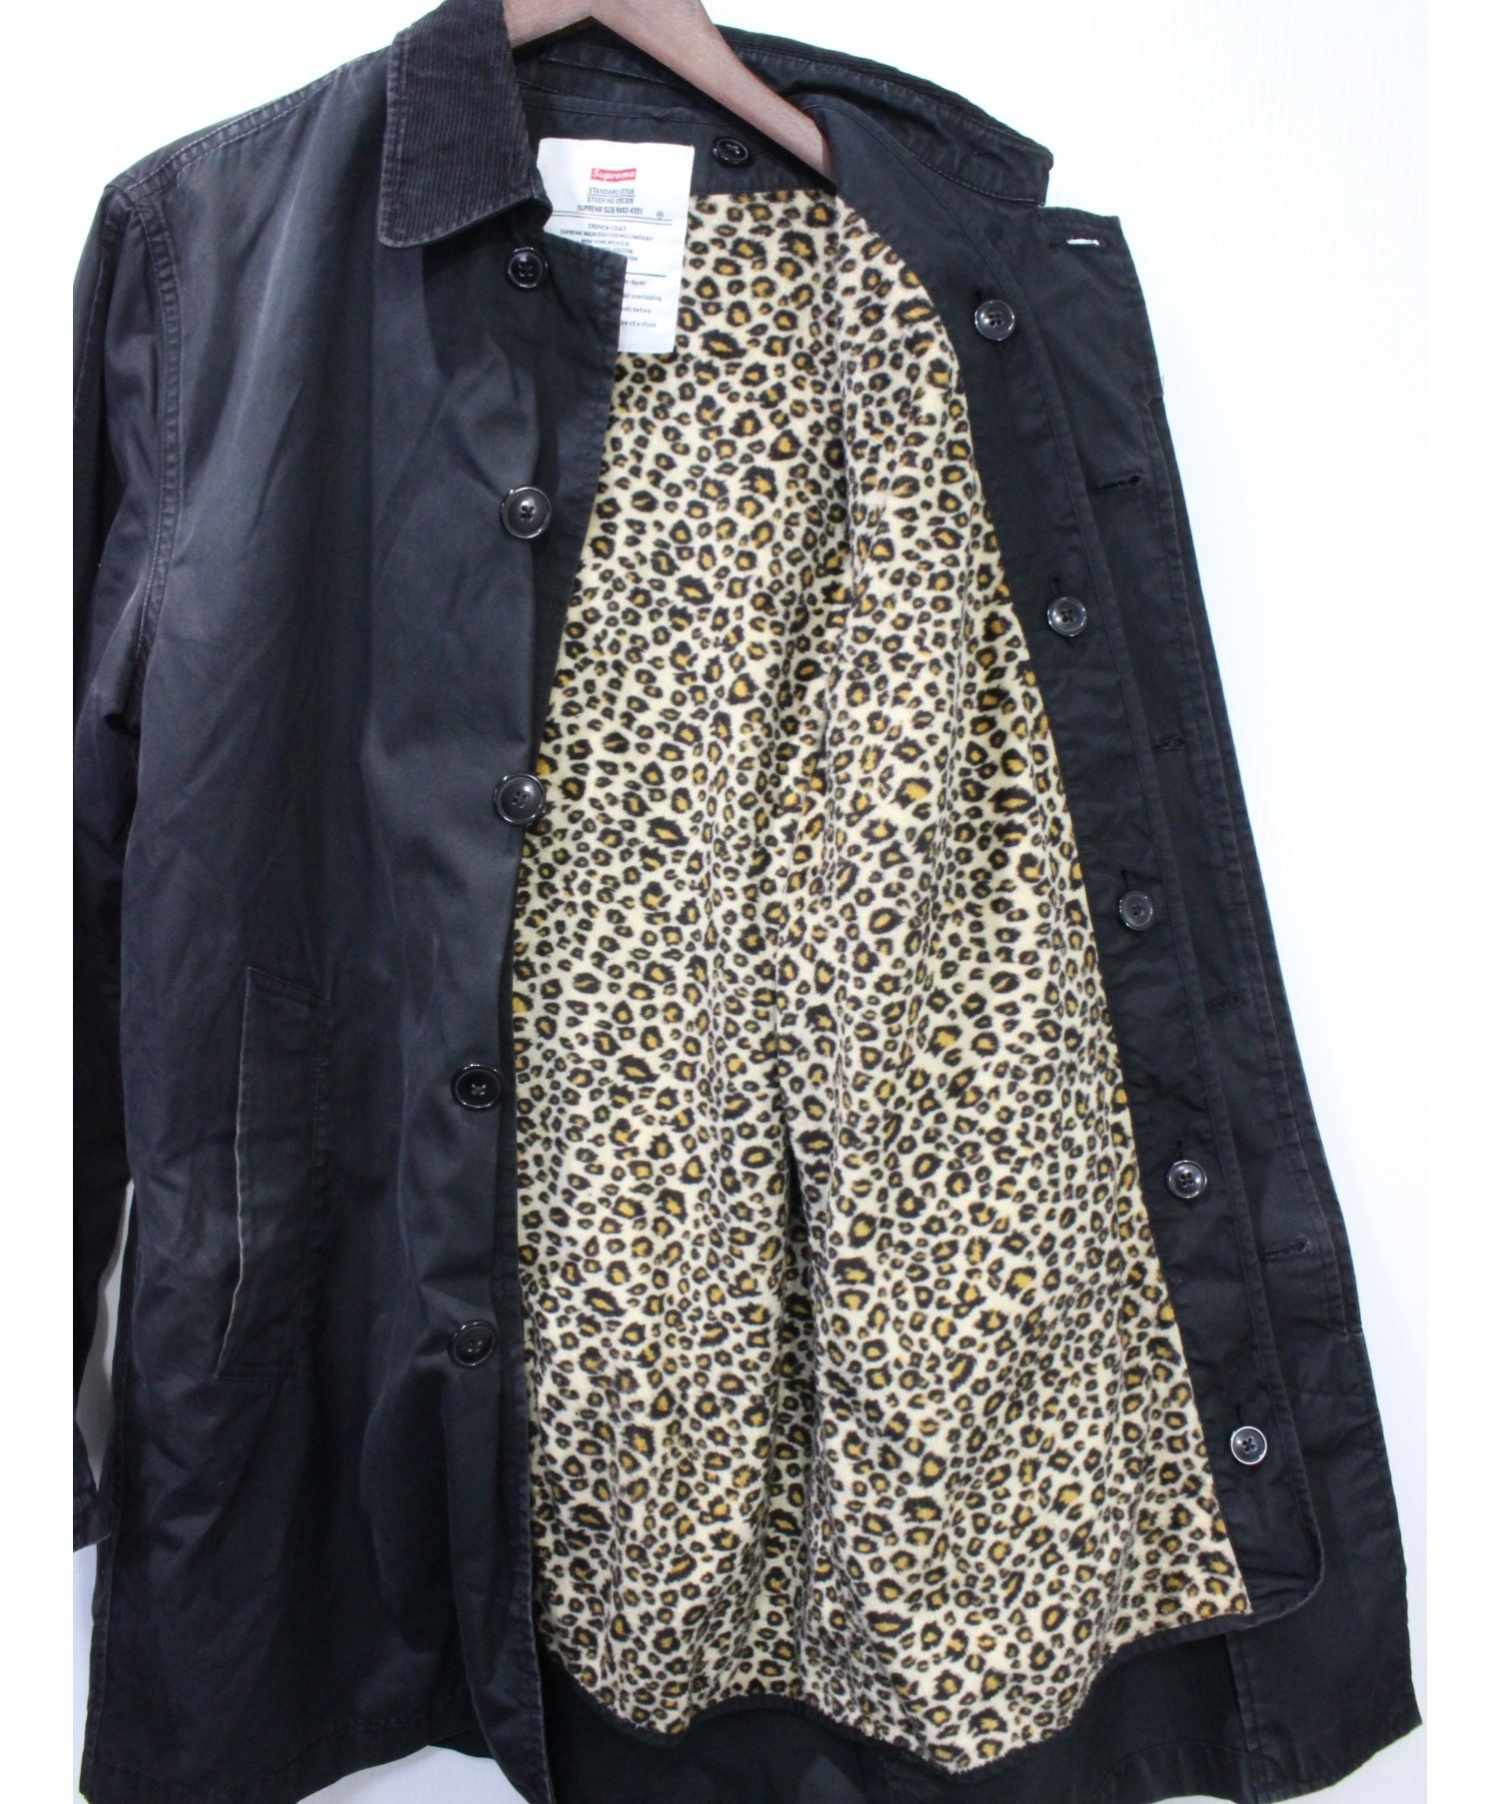 ショップリスト情報 lined leopard supreme trench 11AW coat ステンカラーコート